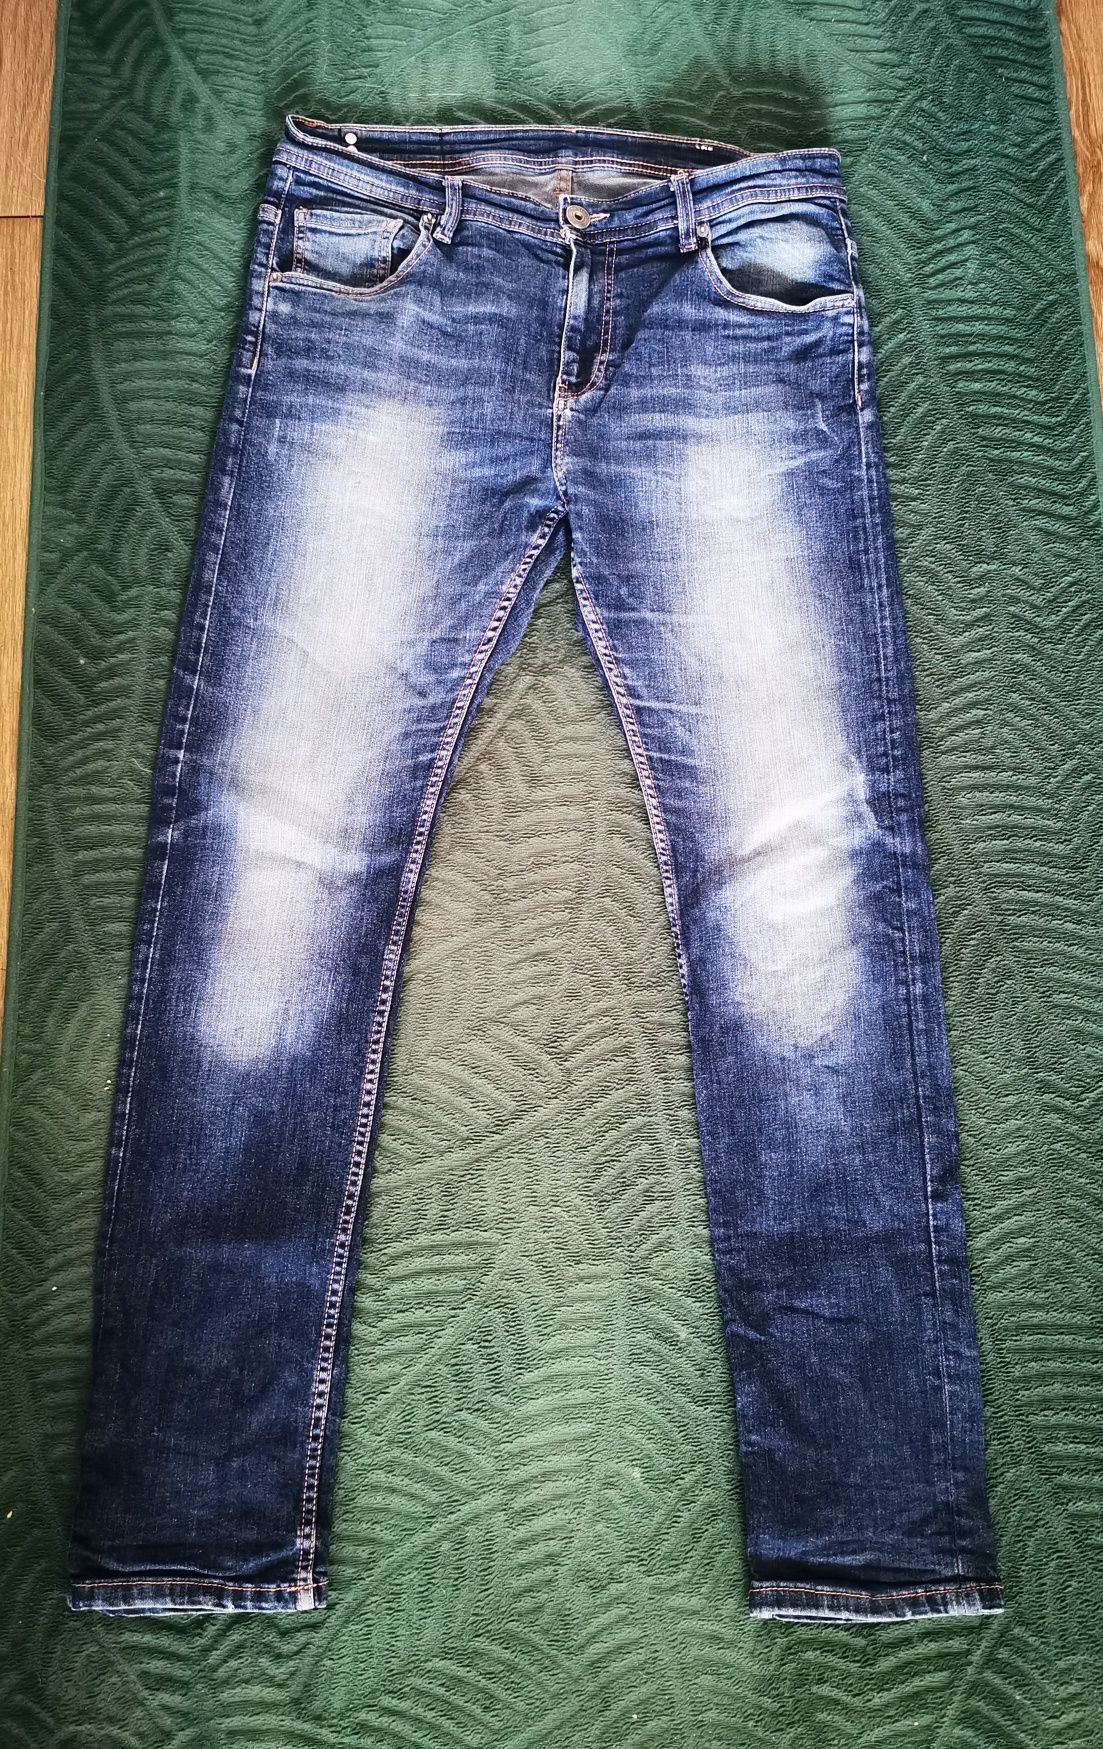 Spodnie męskie dżinsowe r. 48 M/L